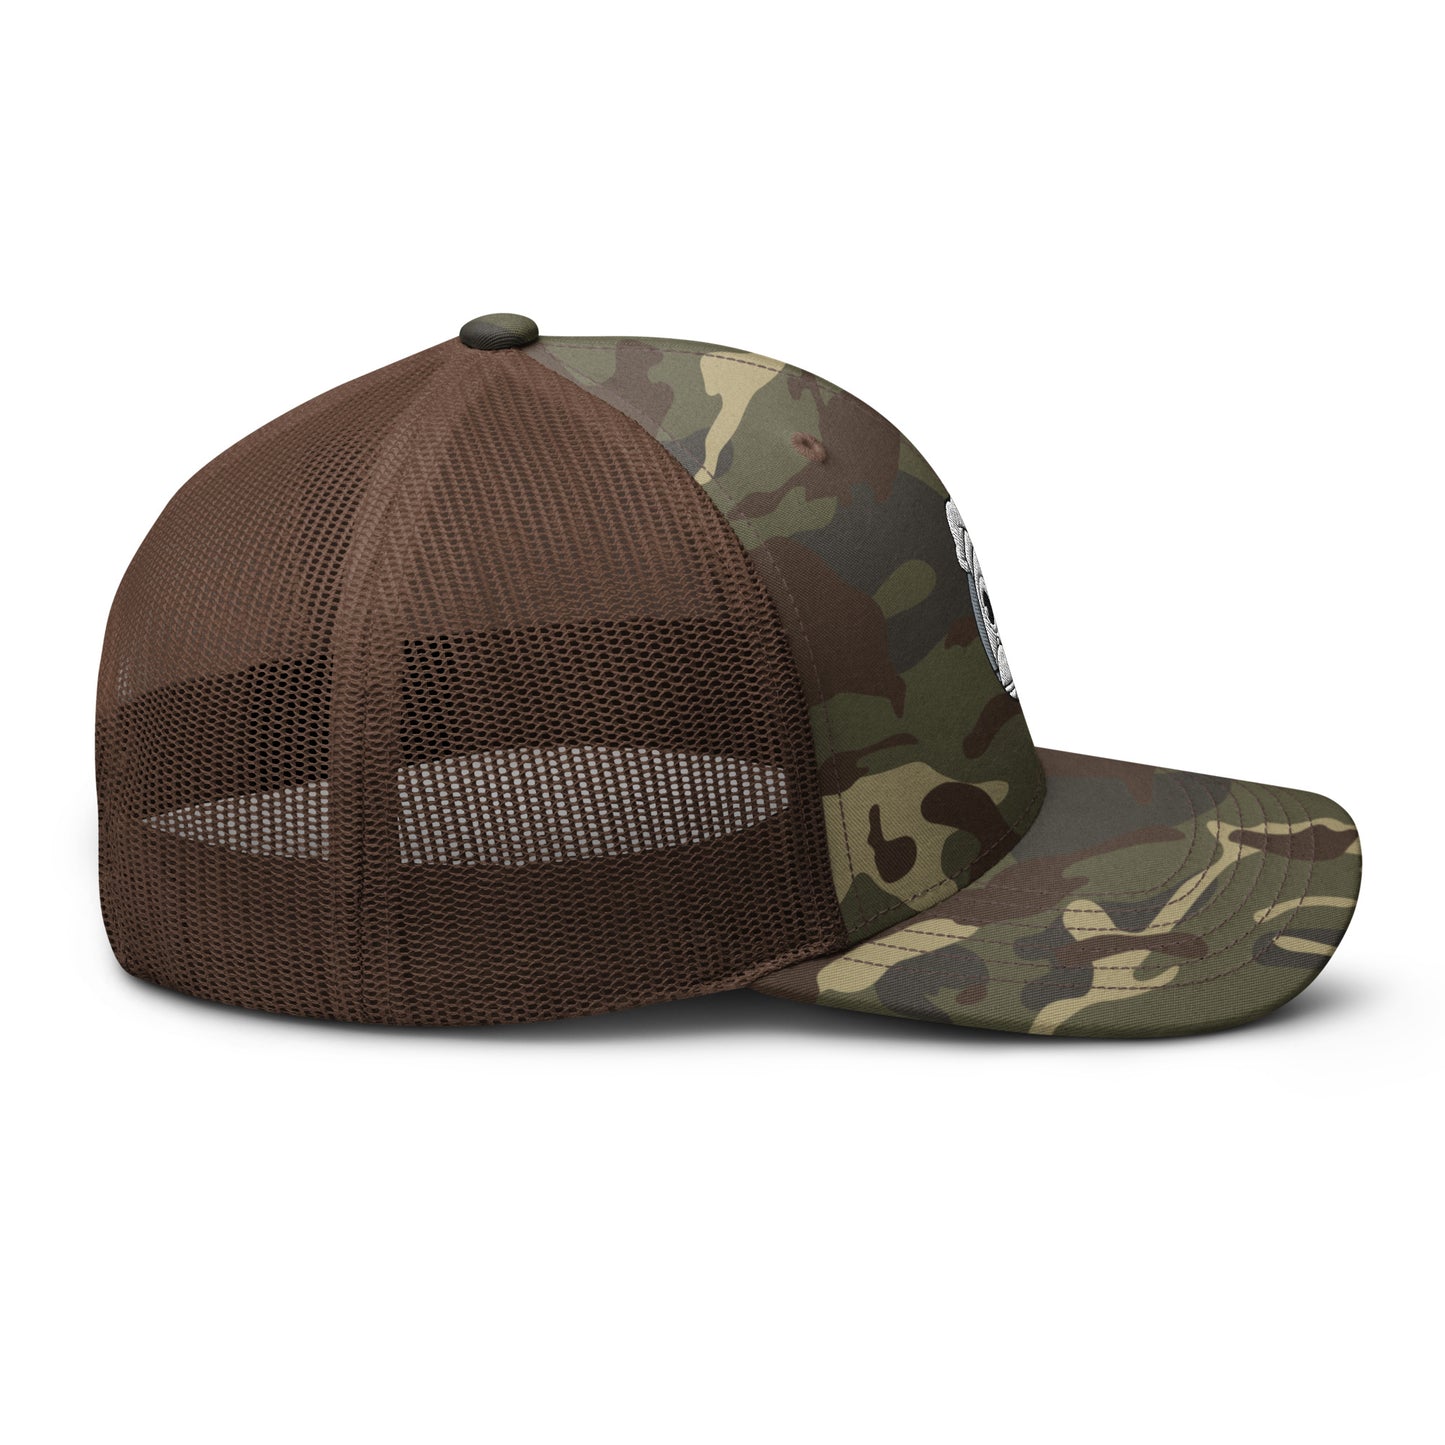 Camouflage chef/trucker hat